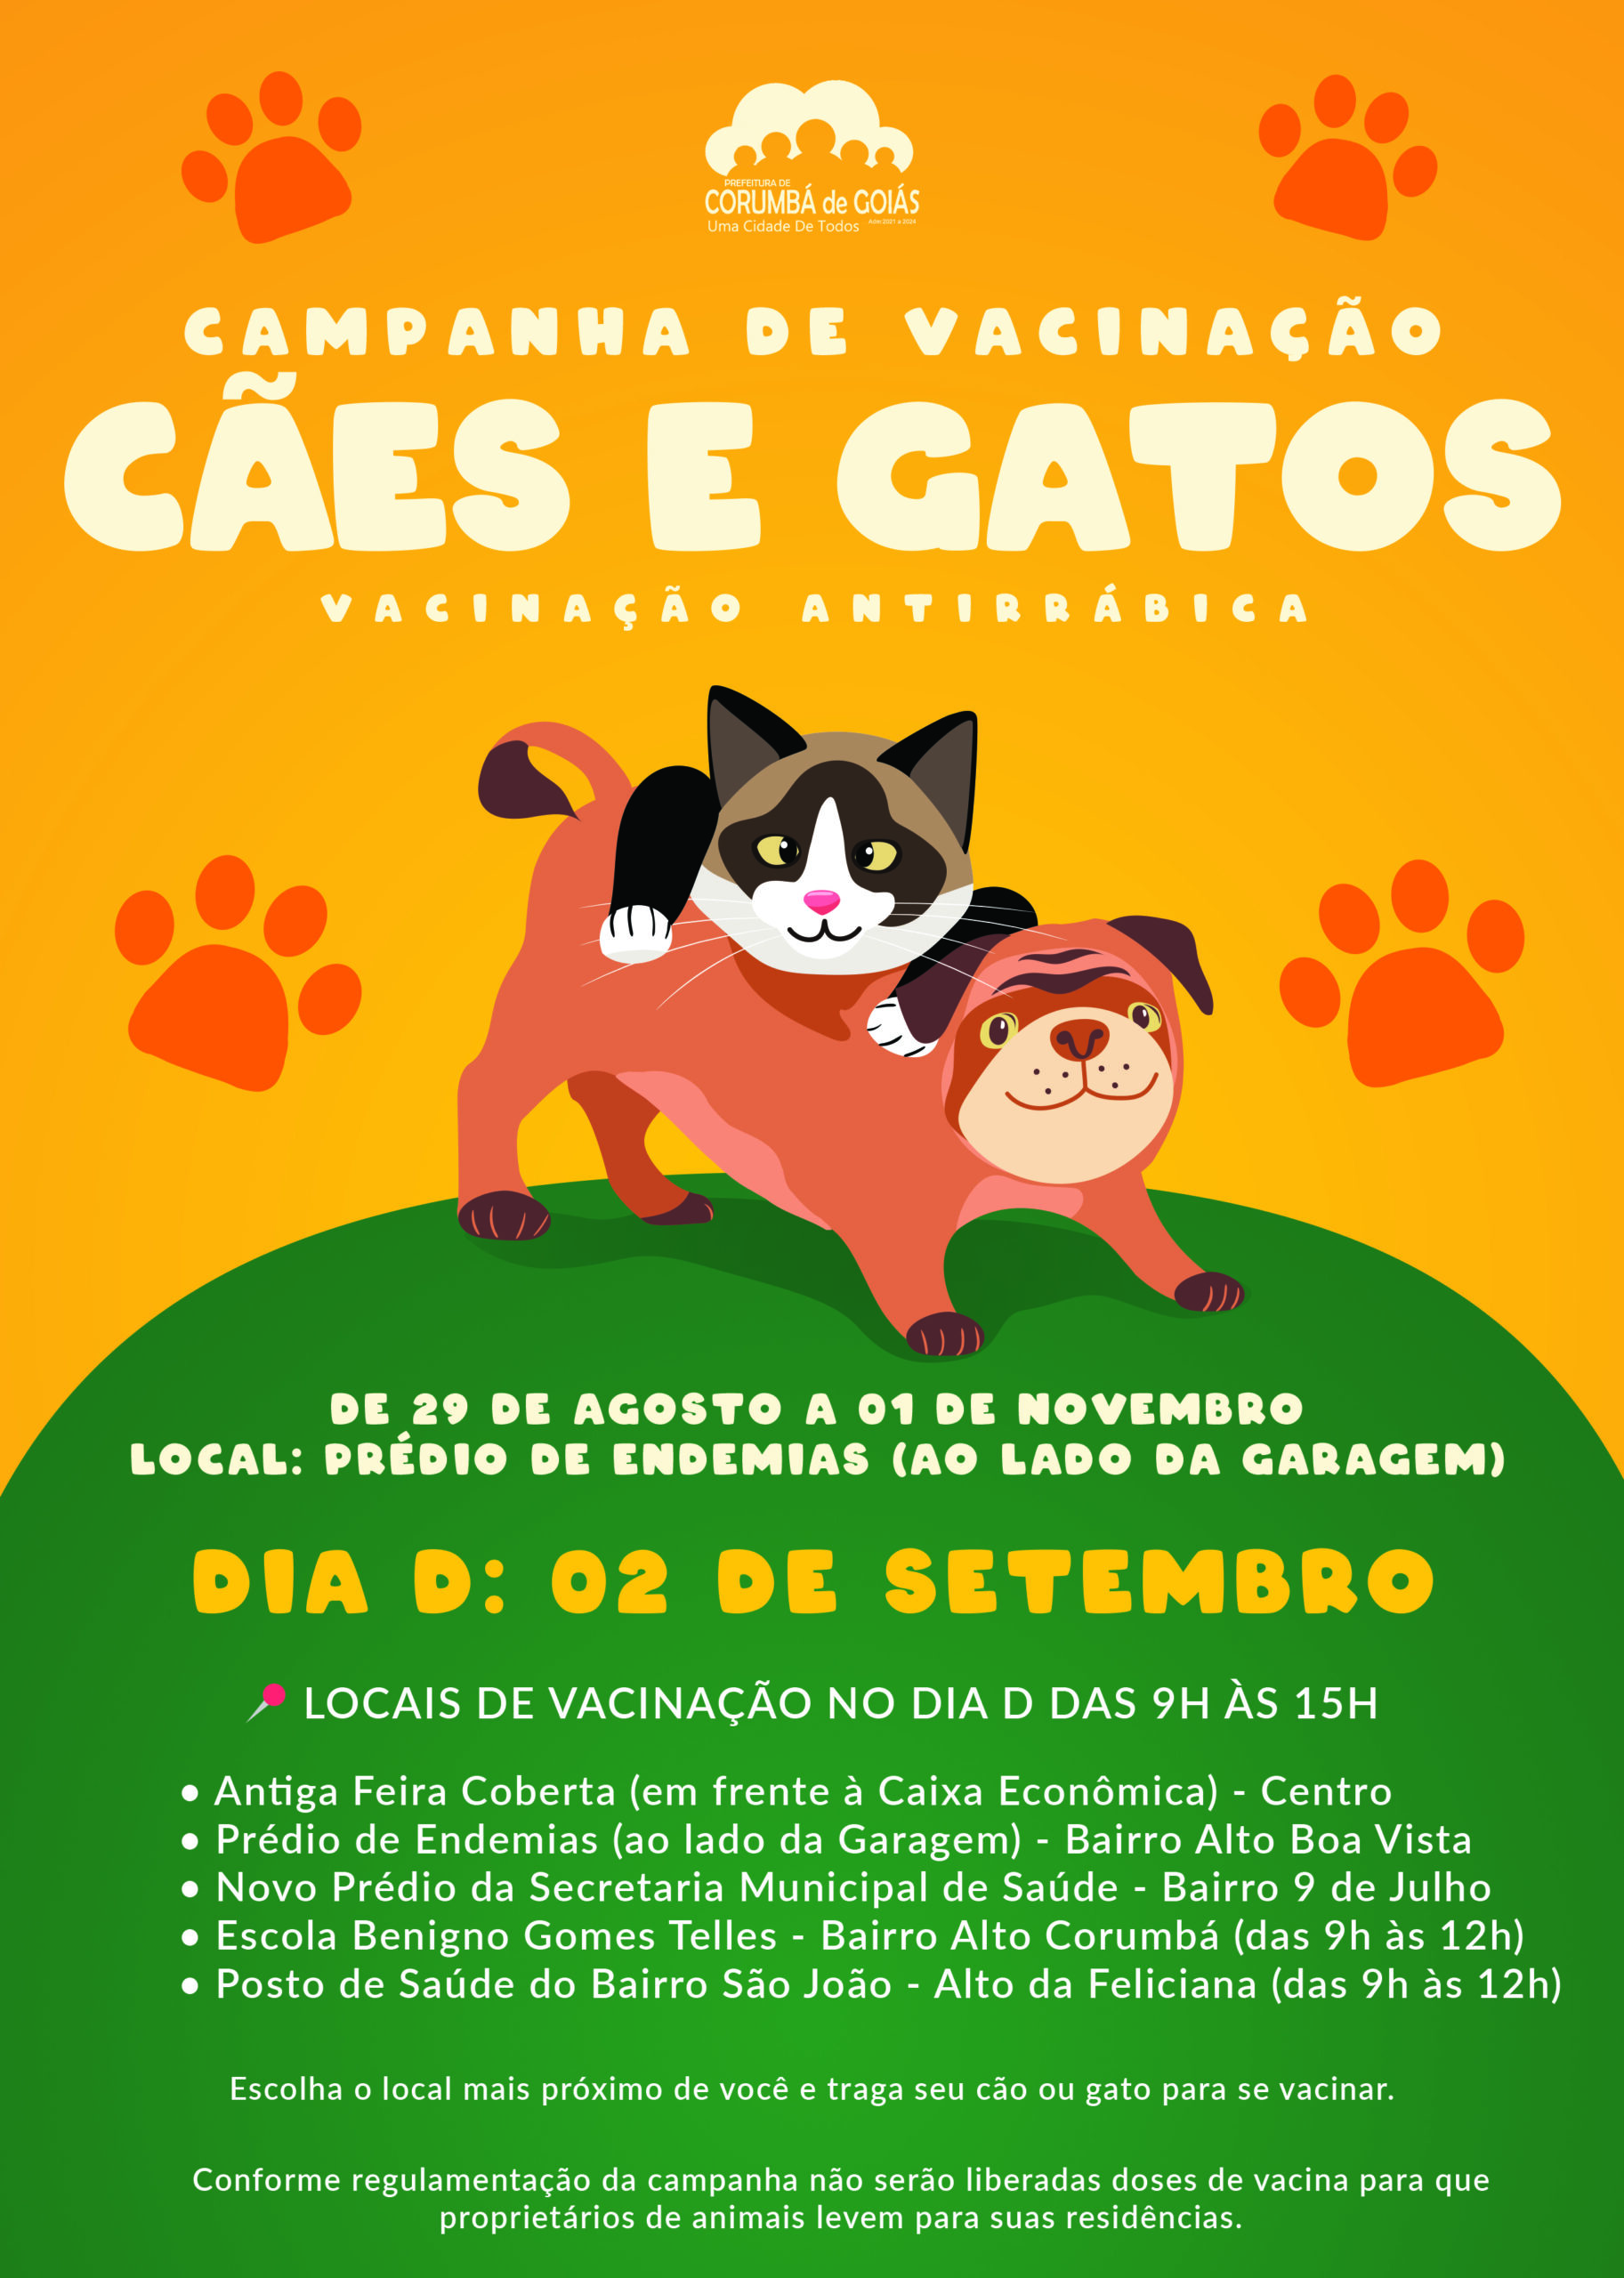 Como Proteger o Seu Gato de Sufocamento – VitalPet Brasil